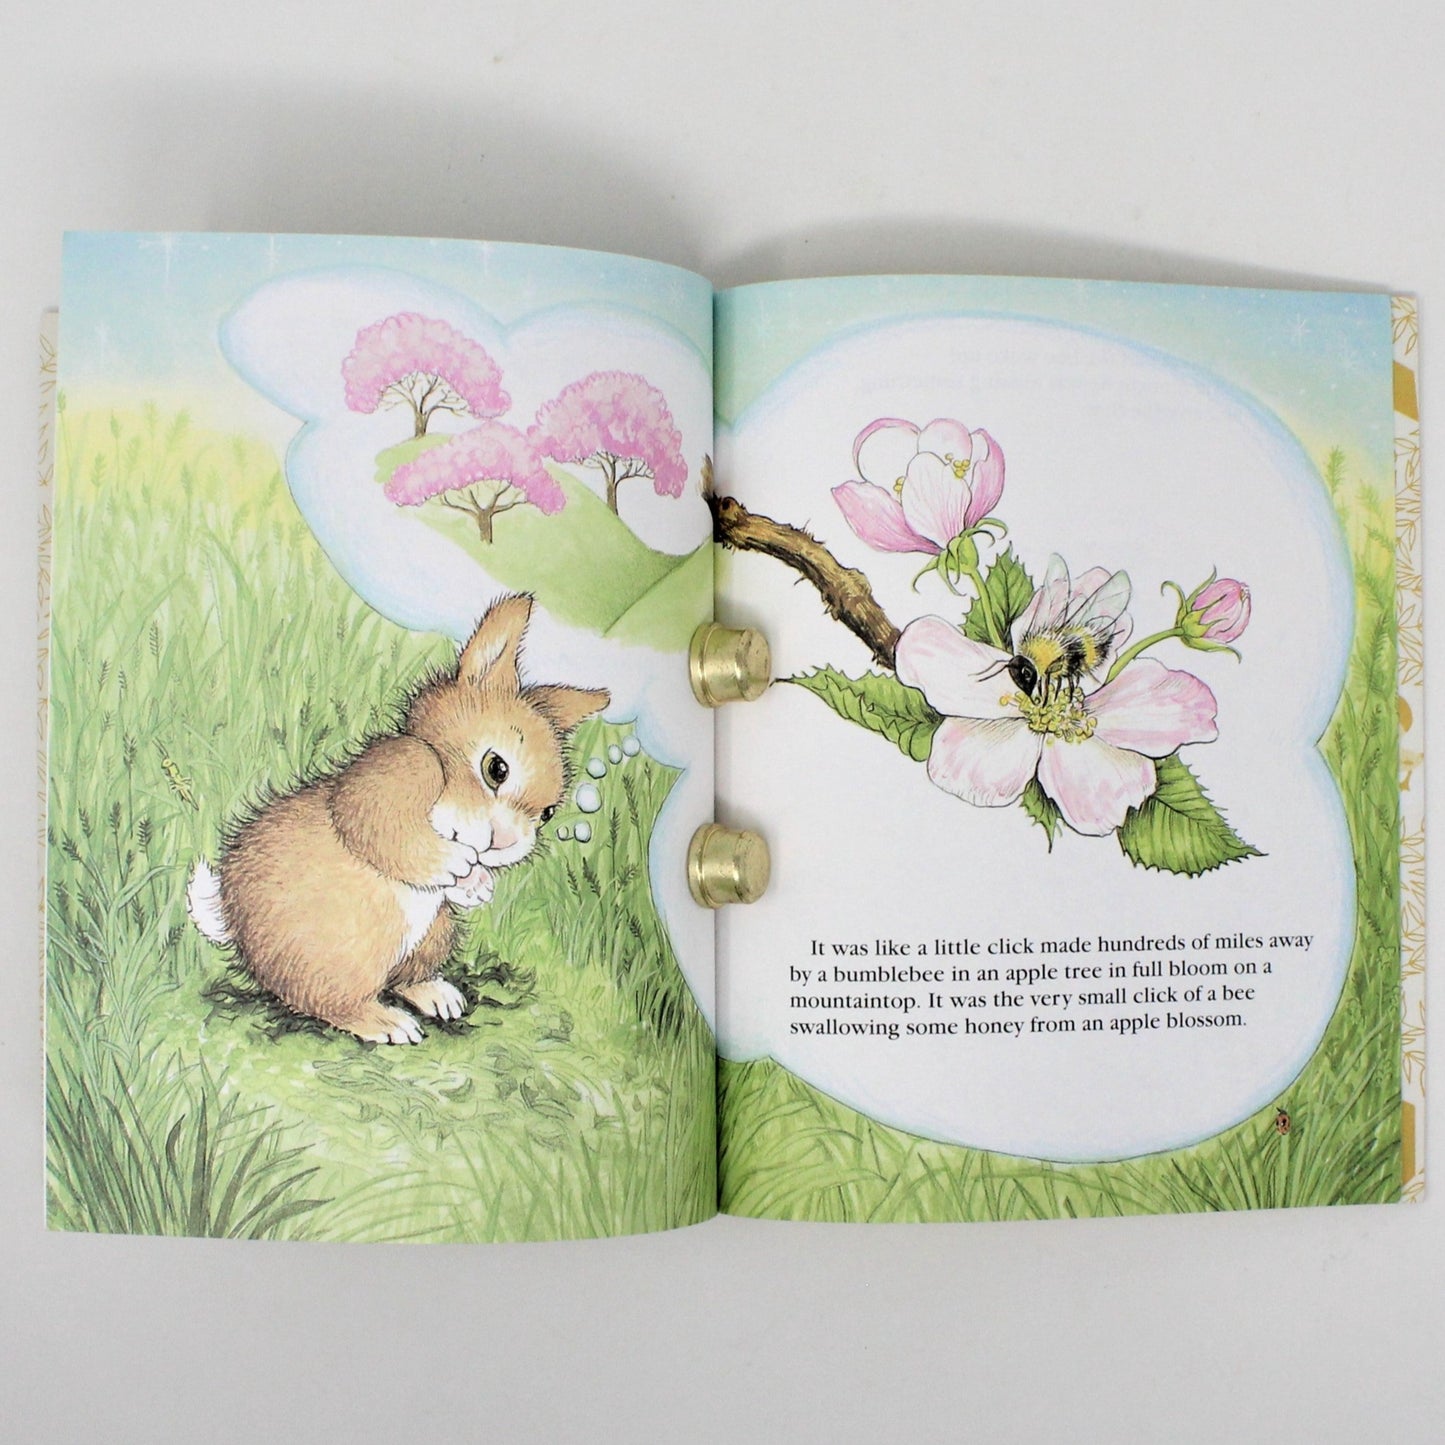 Children's Book, Little Golden Book, The Whispering Rabbit, Hardcover, Vintage 1997